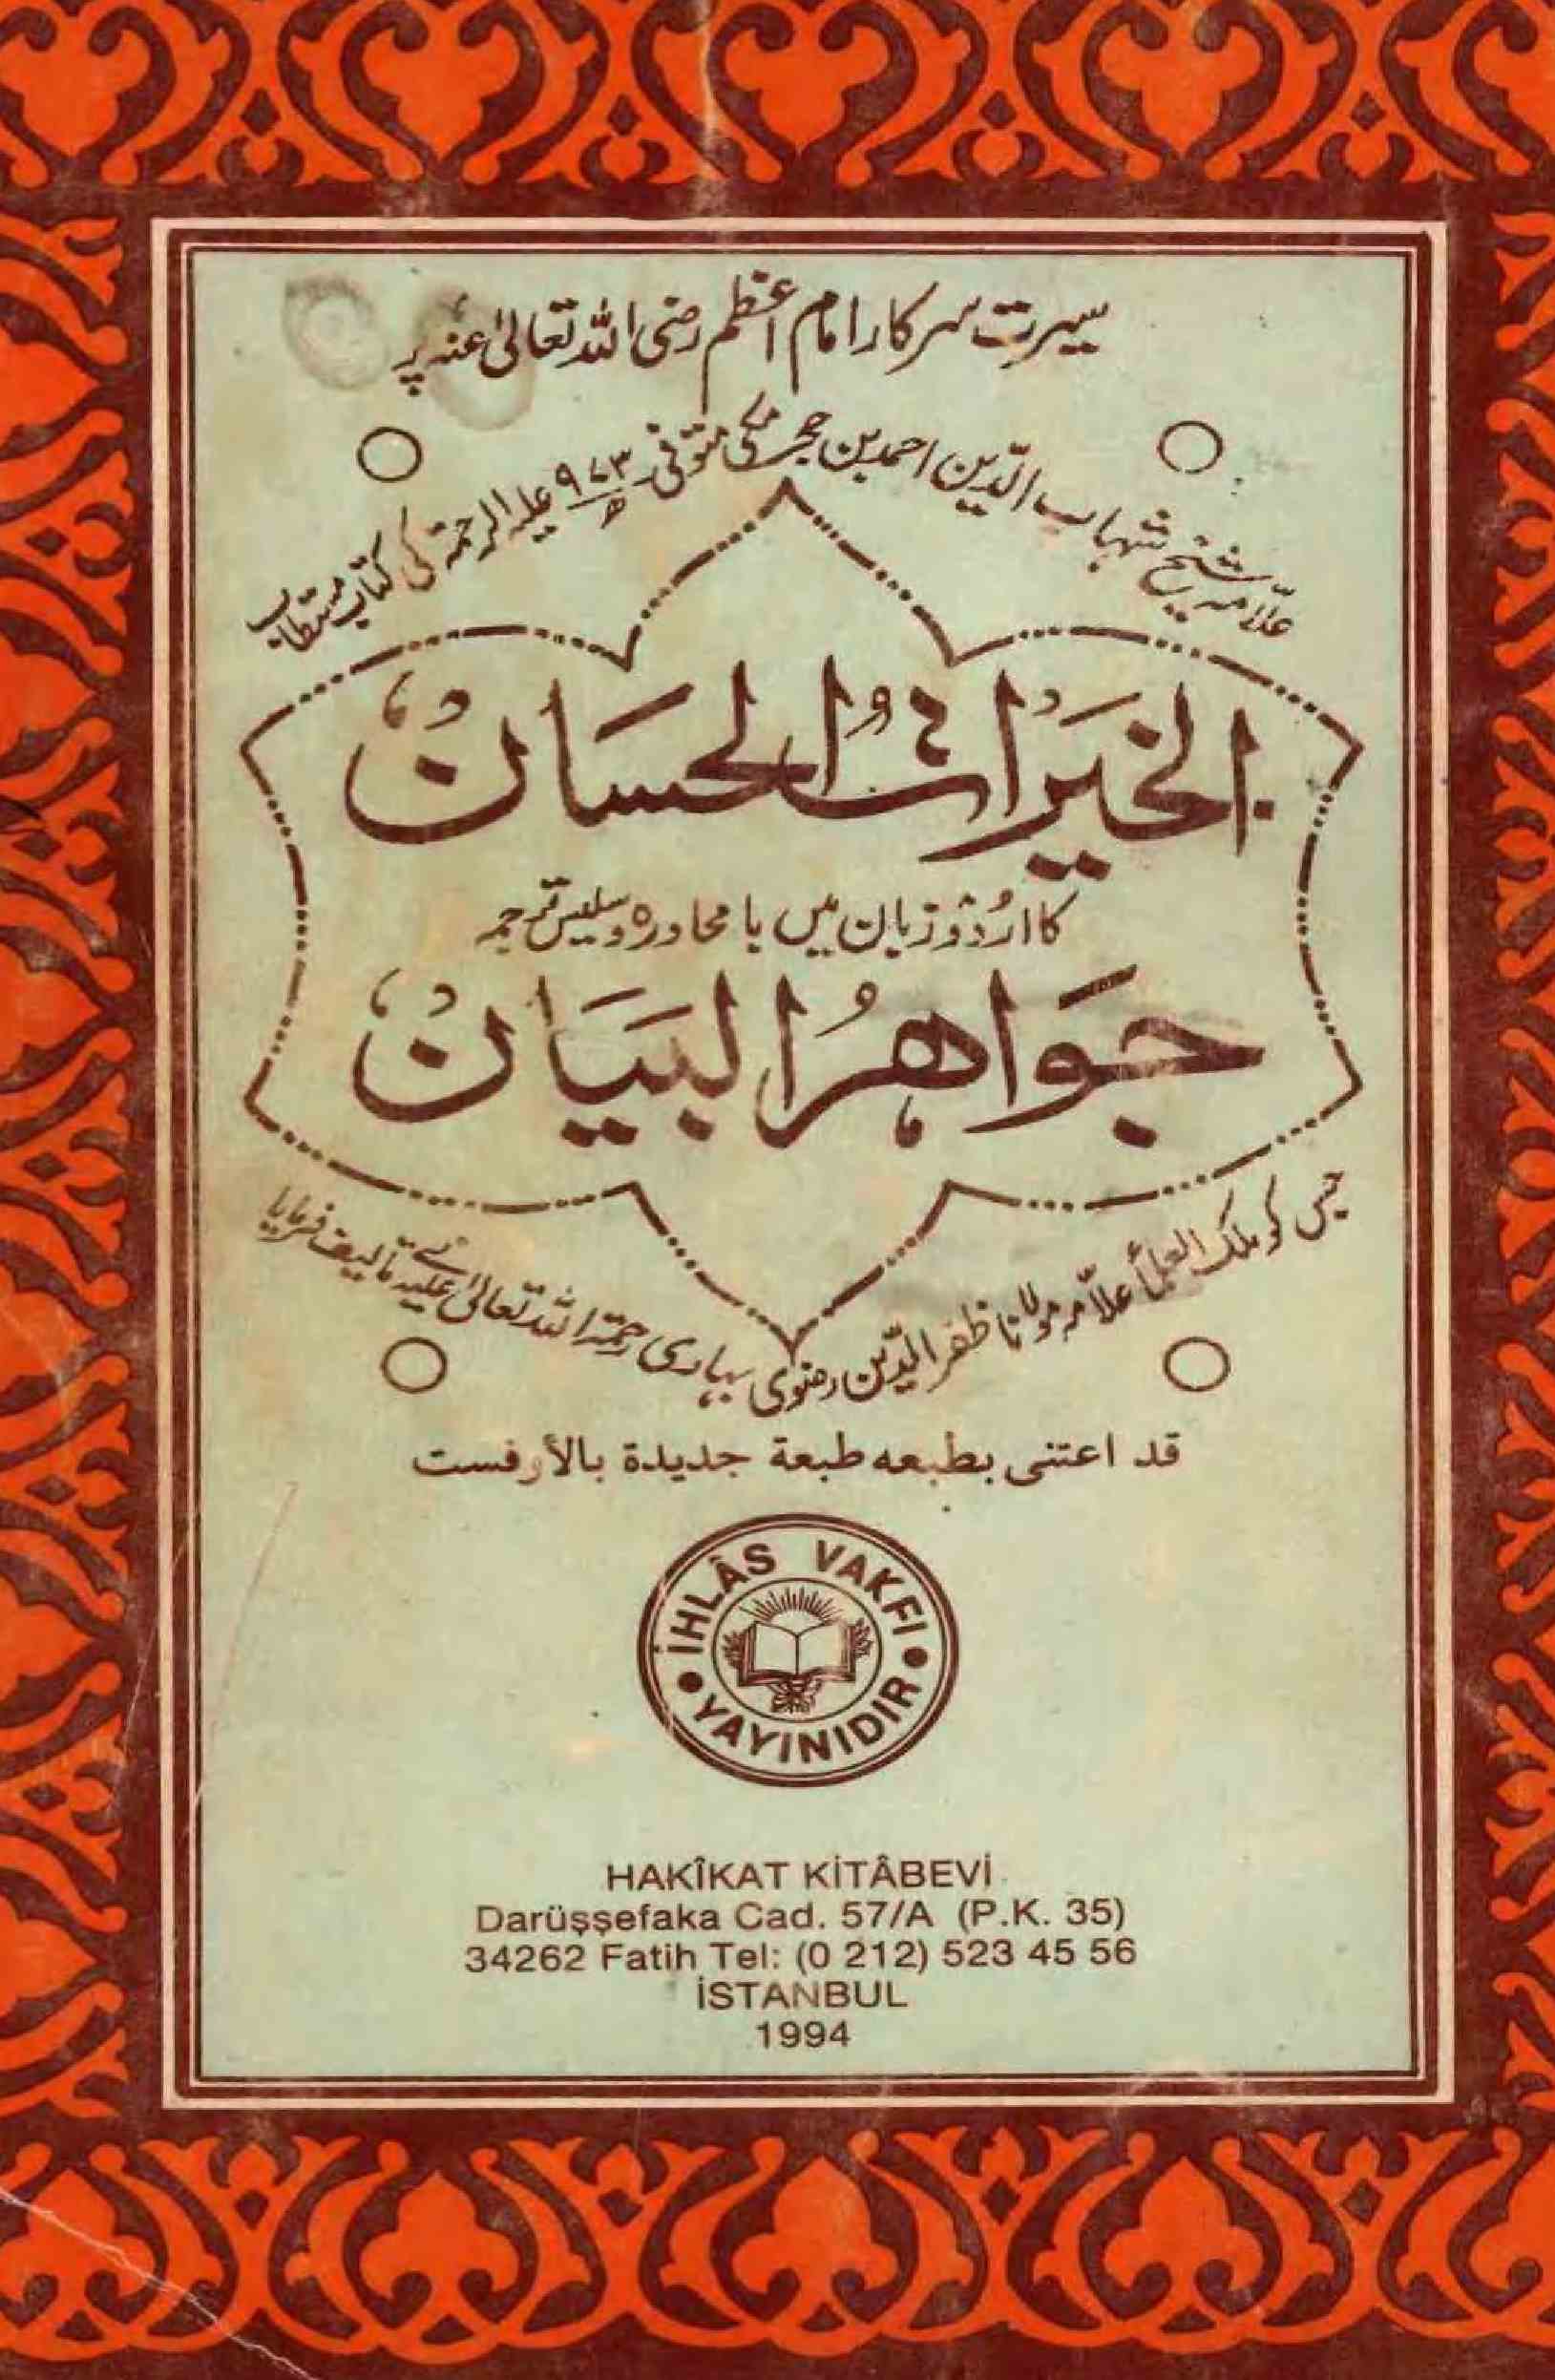 Al-Khairatul-Hisan